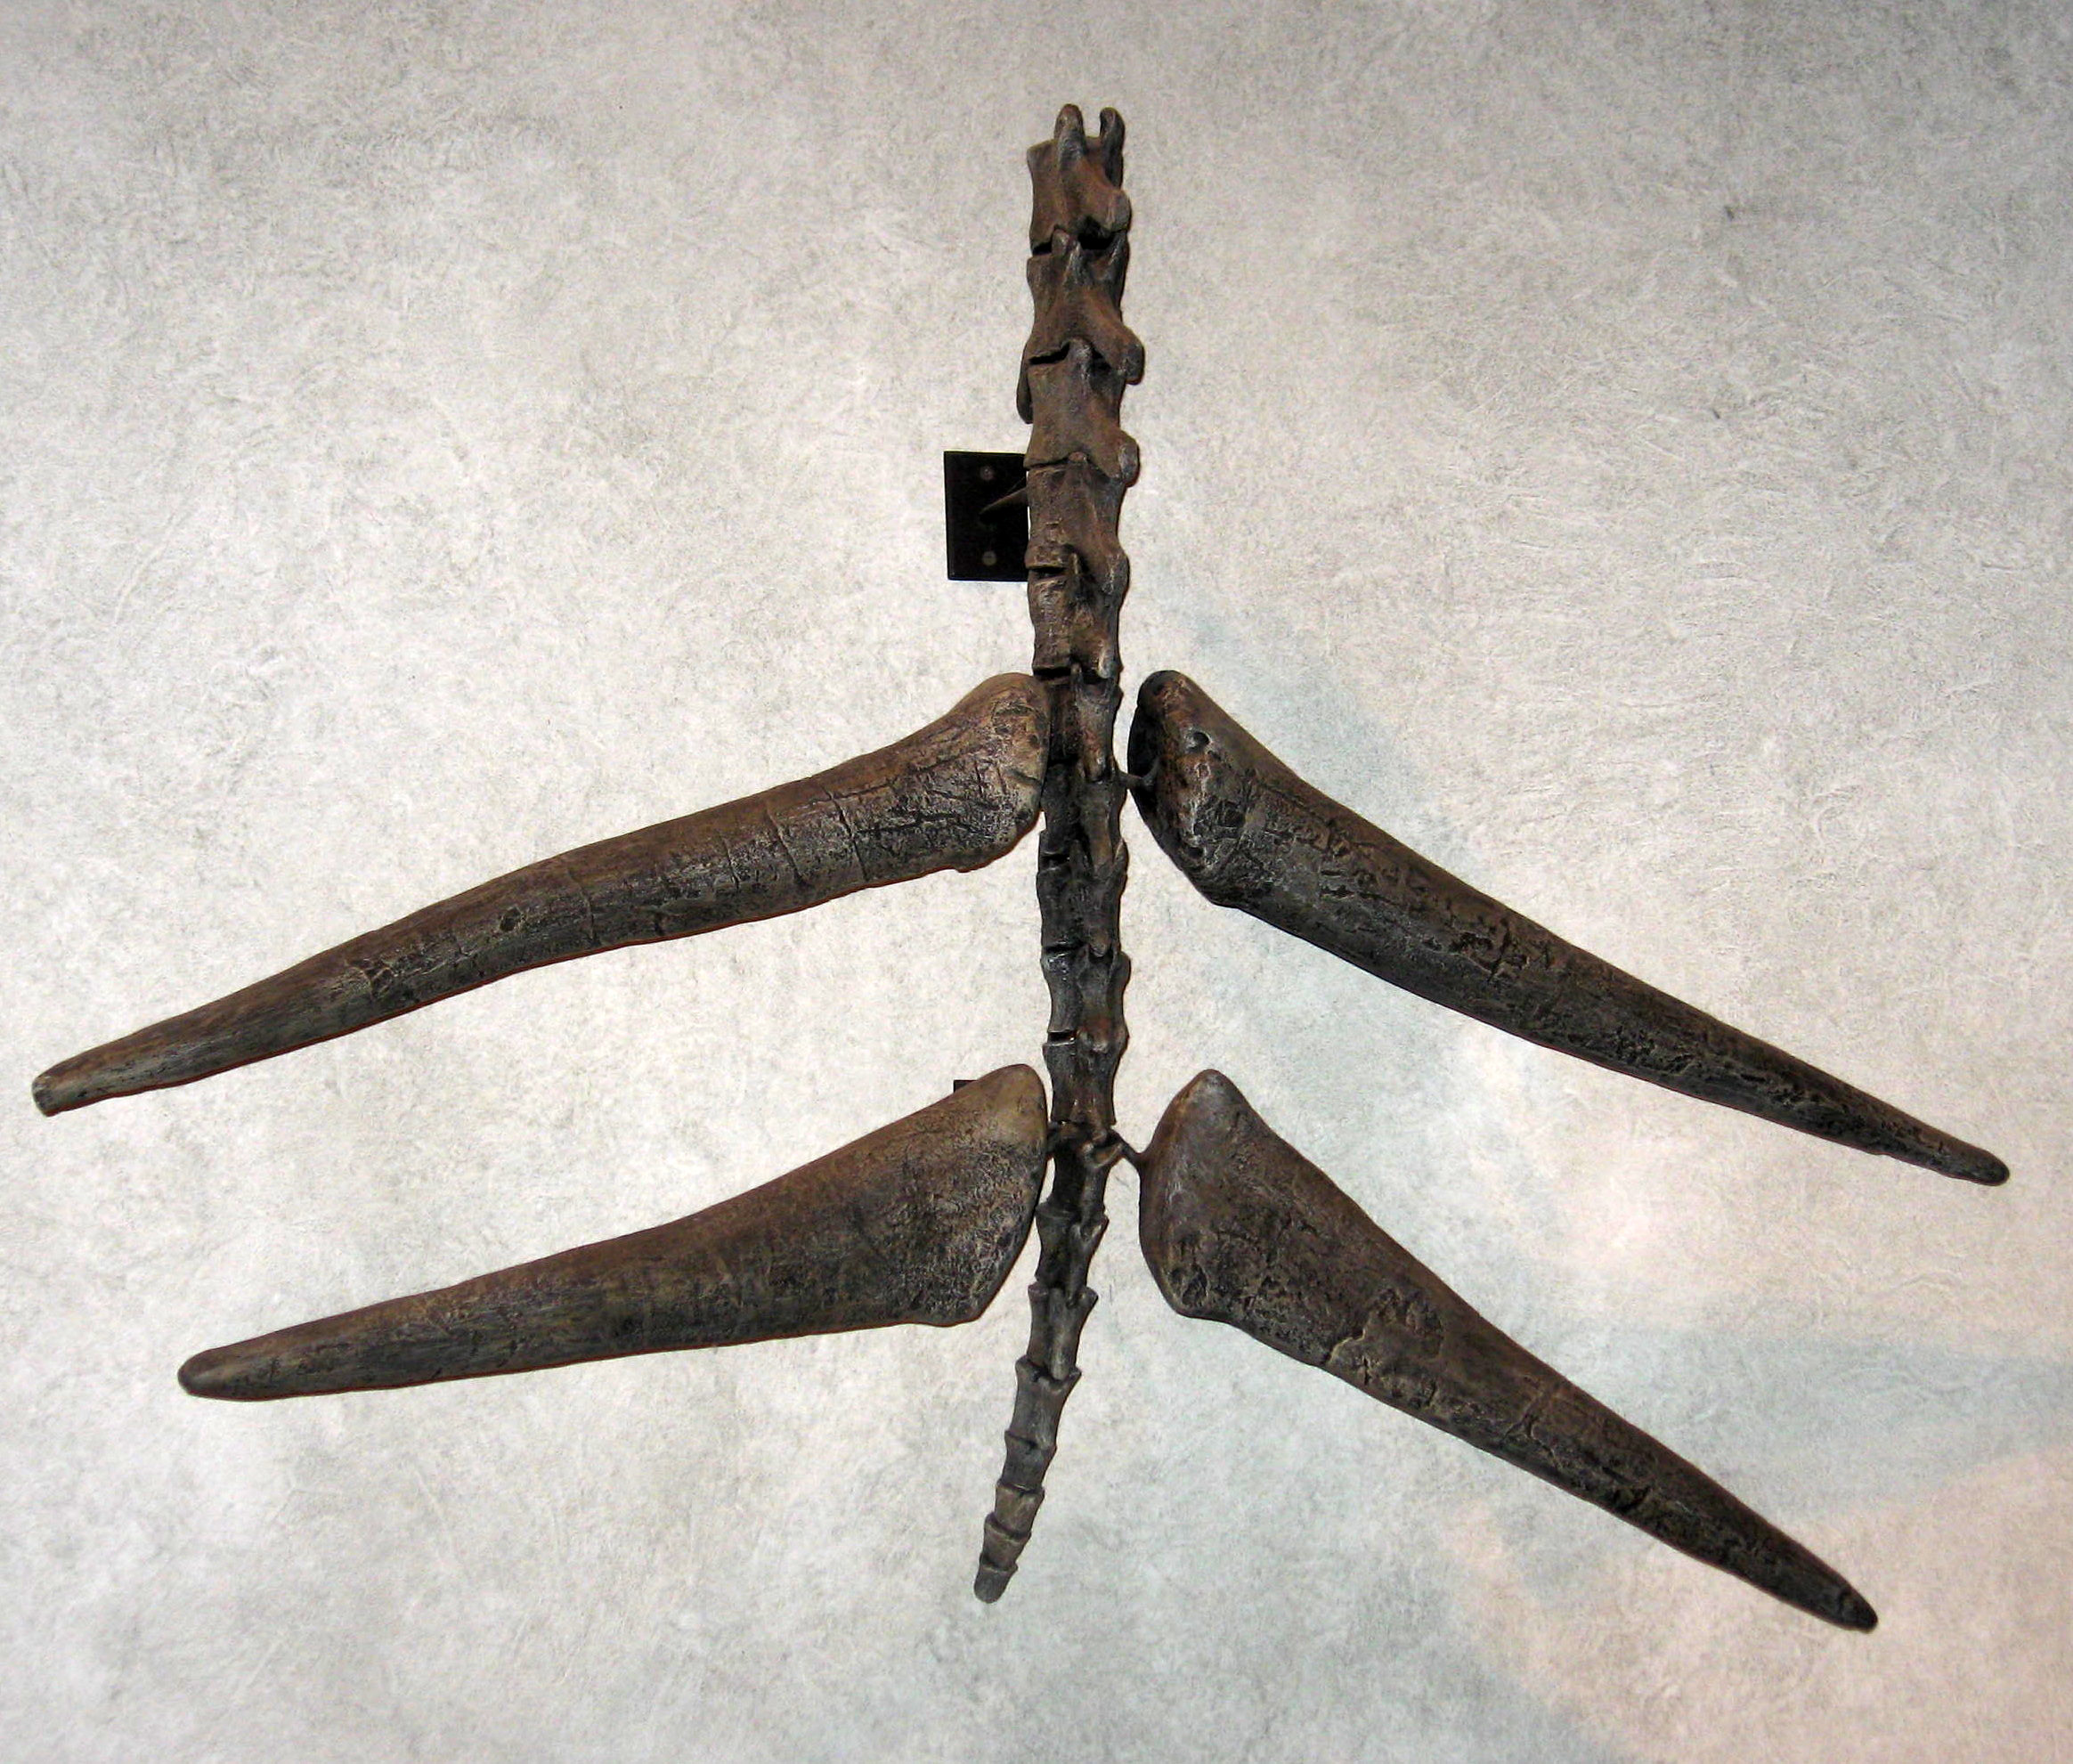 Proslulý „thagomizer“ v podobě špičatých bodců na konci ocasu, které stegosauři používali k obraně před predátory. Při délce 60 až 90 centimetrů byly nepochybně velmi nebezpečnou zbraní i pro obří pozdně jurské teropody, jako byl Saurophaganax nebo T